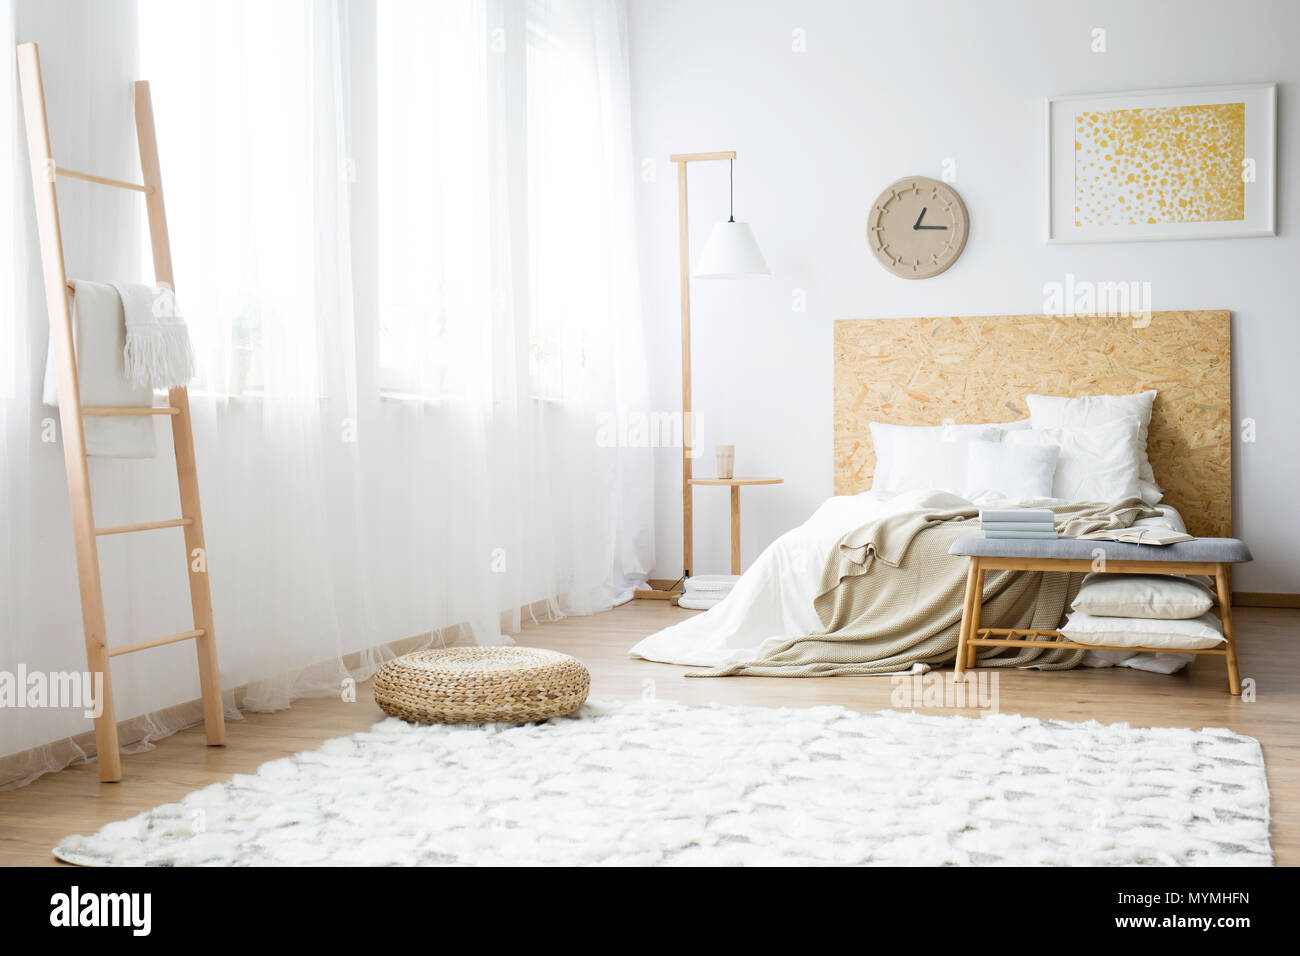 Moderne Uhr über ein Doppelbett, gefüllt mit Kissen in einem weißen Schlafzimmer Innenraum hängen Stockfoto